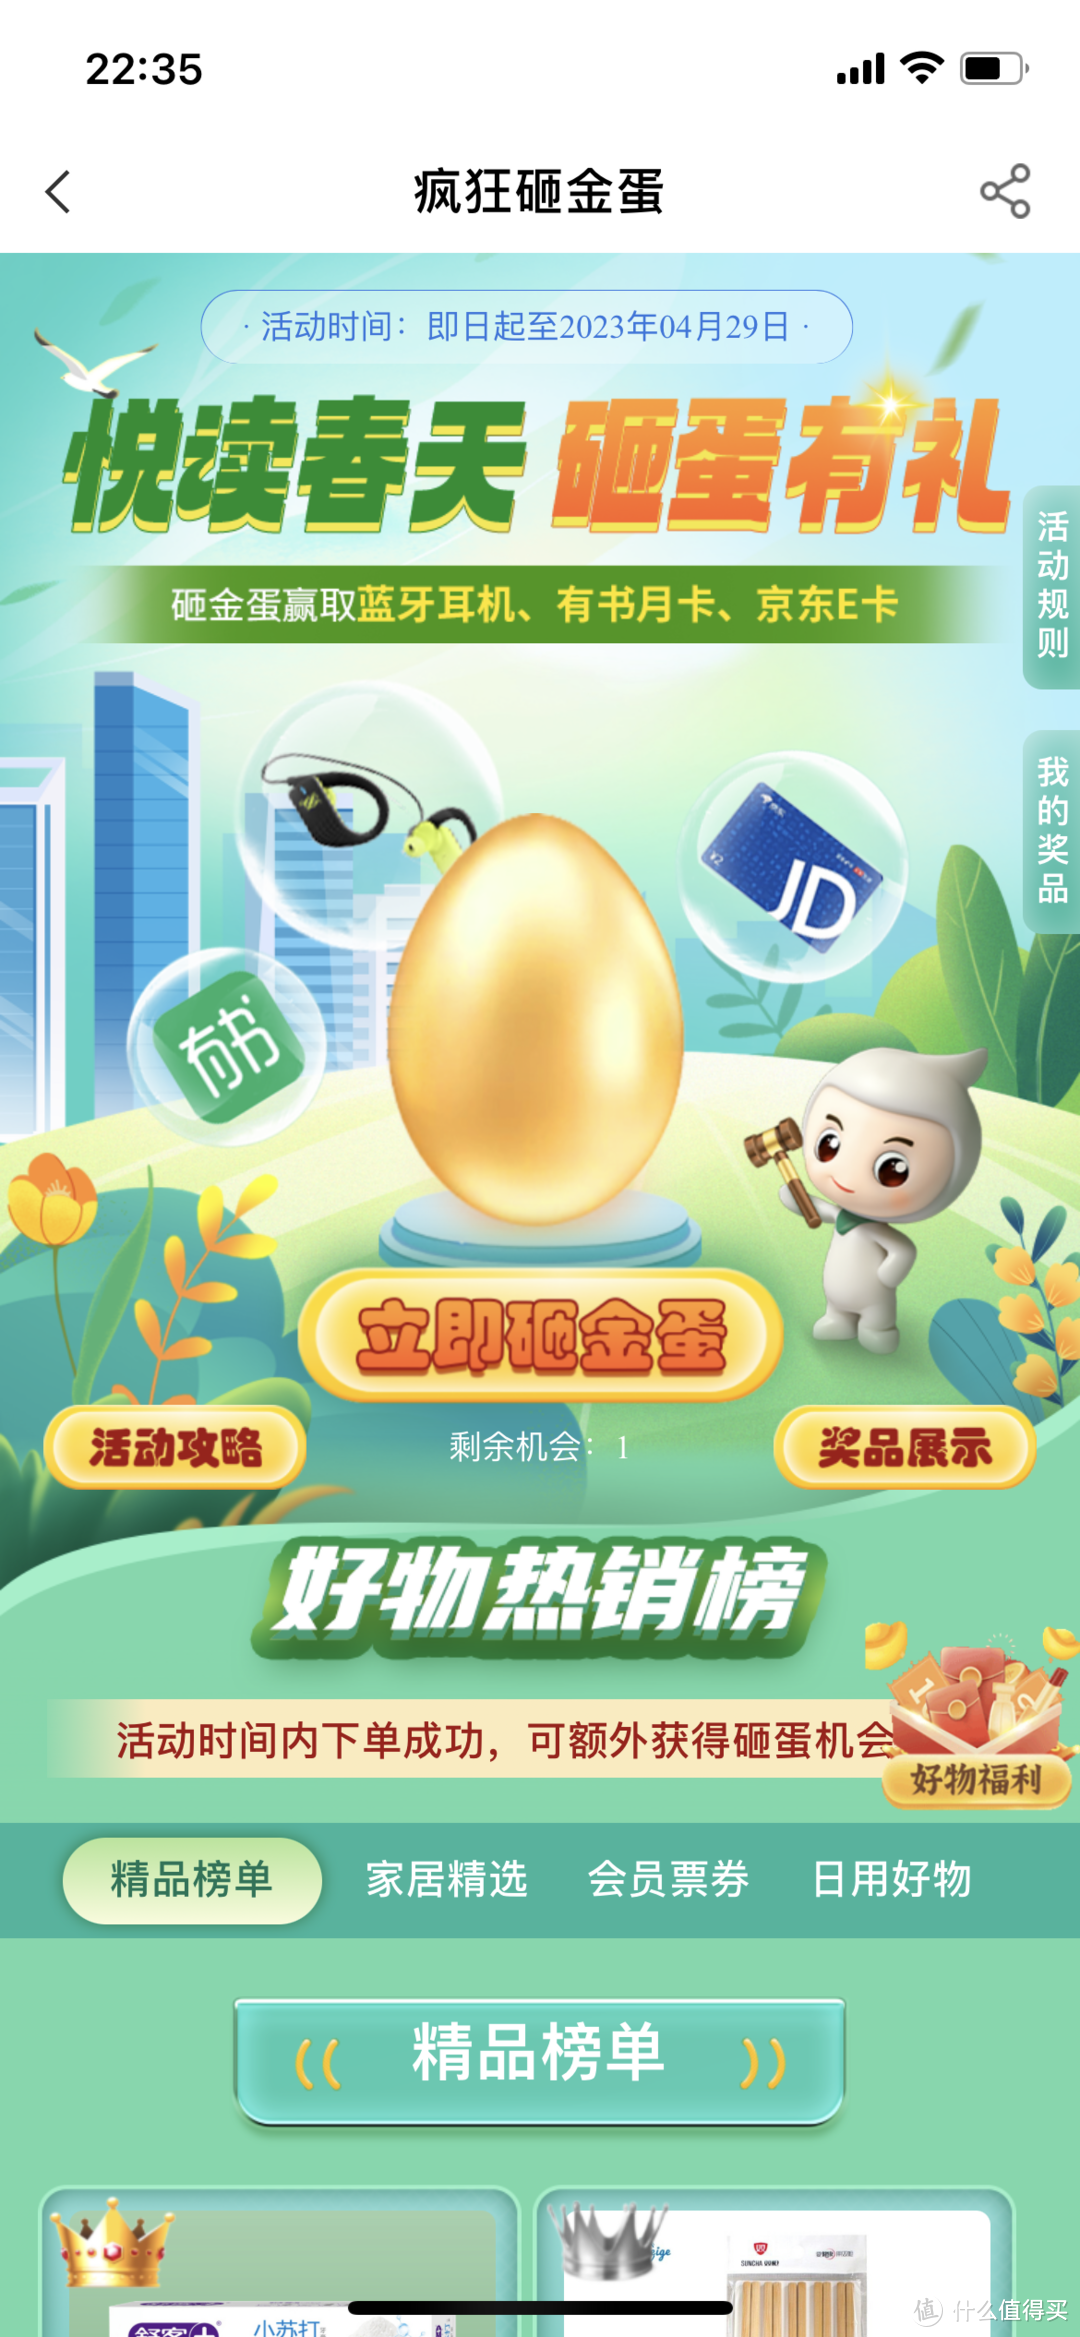 农业银行app阅读春天砸蛋有礼活动得京东E卡，小豆兑换礼券活动。